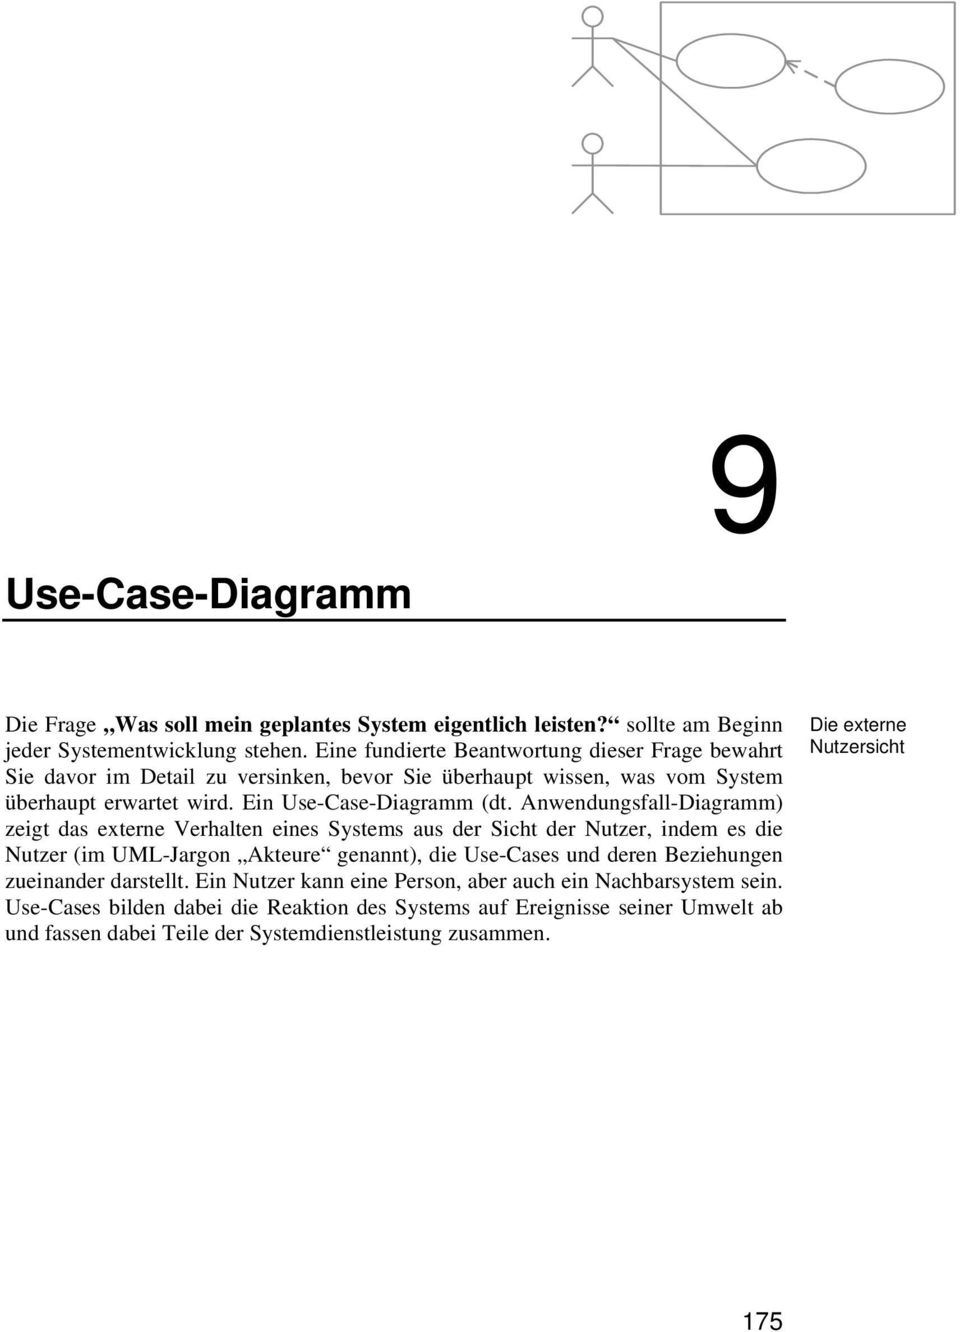 Anwendungsfall-Diagramm) zeigt das externe Verhalten eines Systems aus der Sicht der Nutzer, indem es die Nutzer (im UML-Jargon Akteure genannt), die Use-Cases und deren Beziehungen